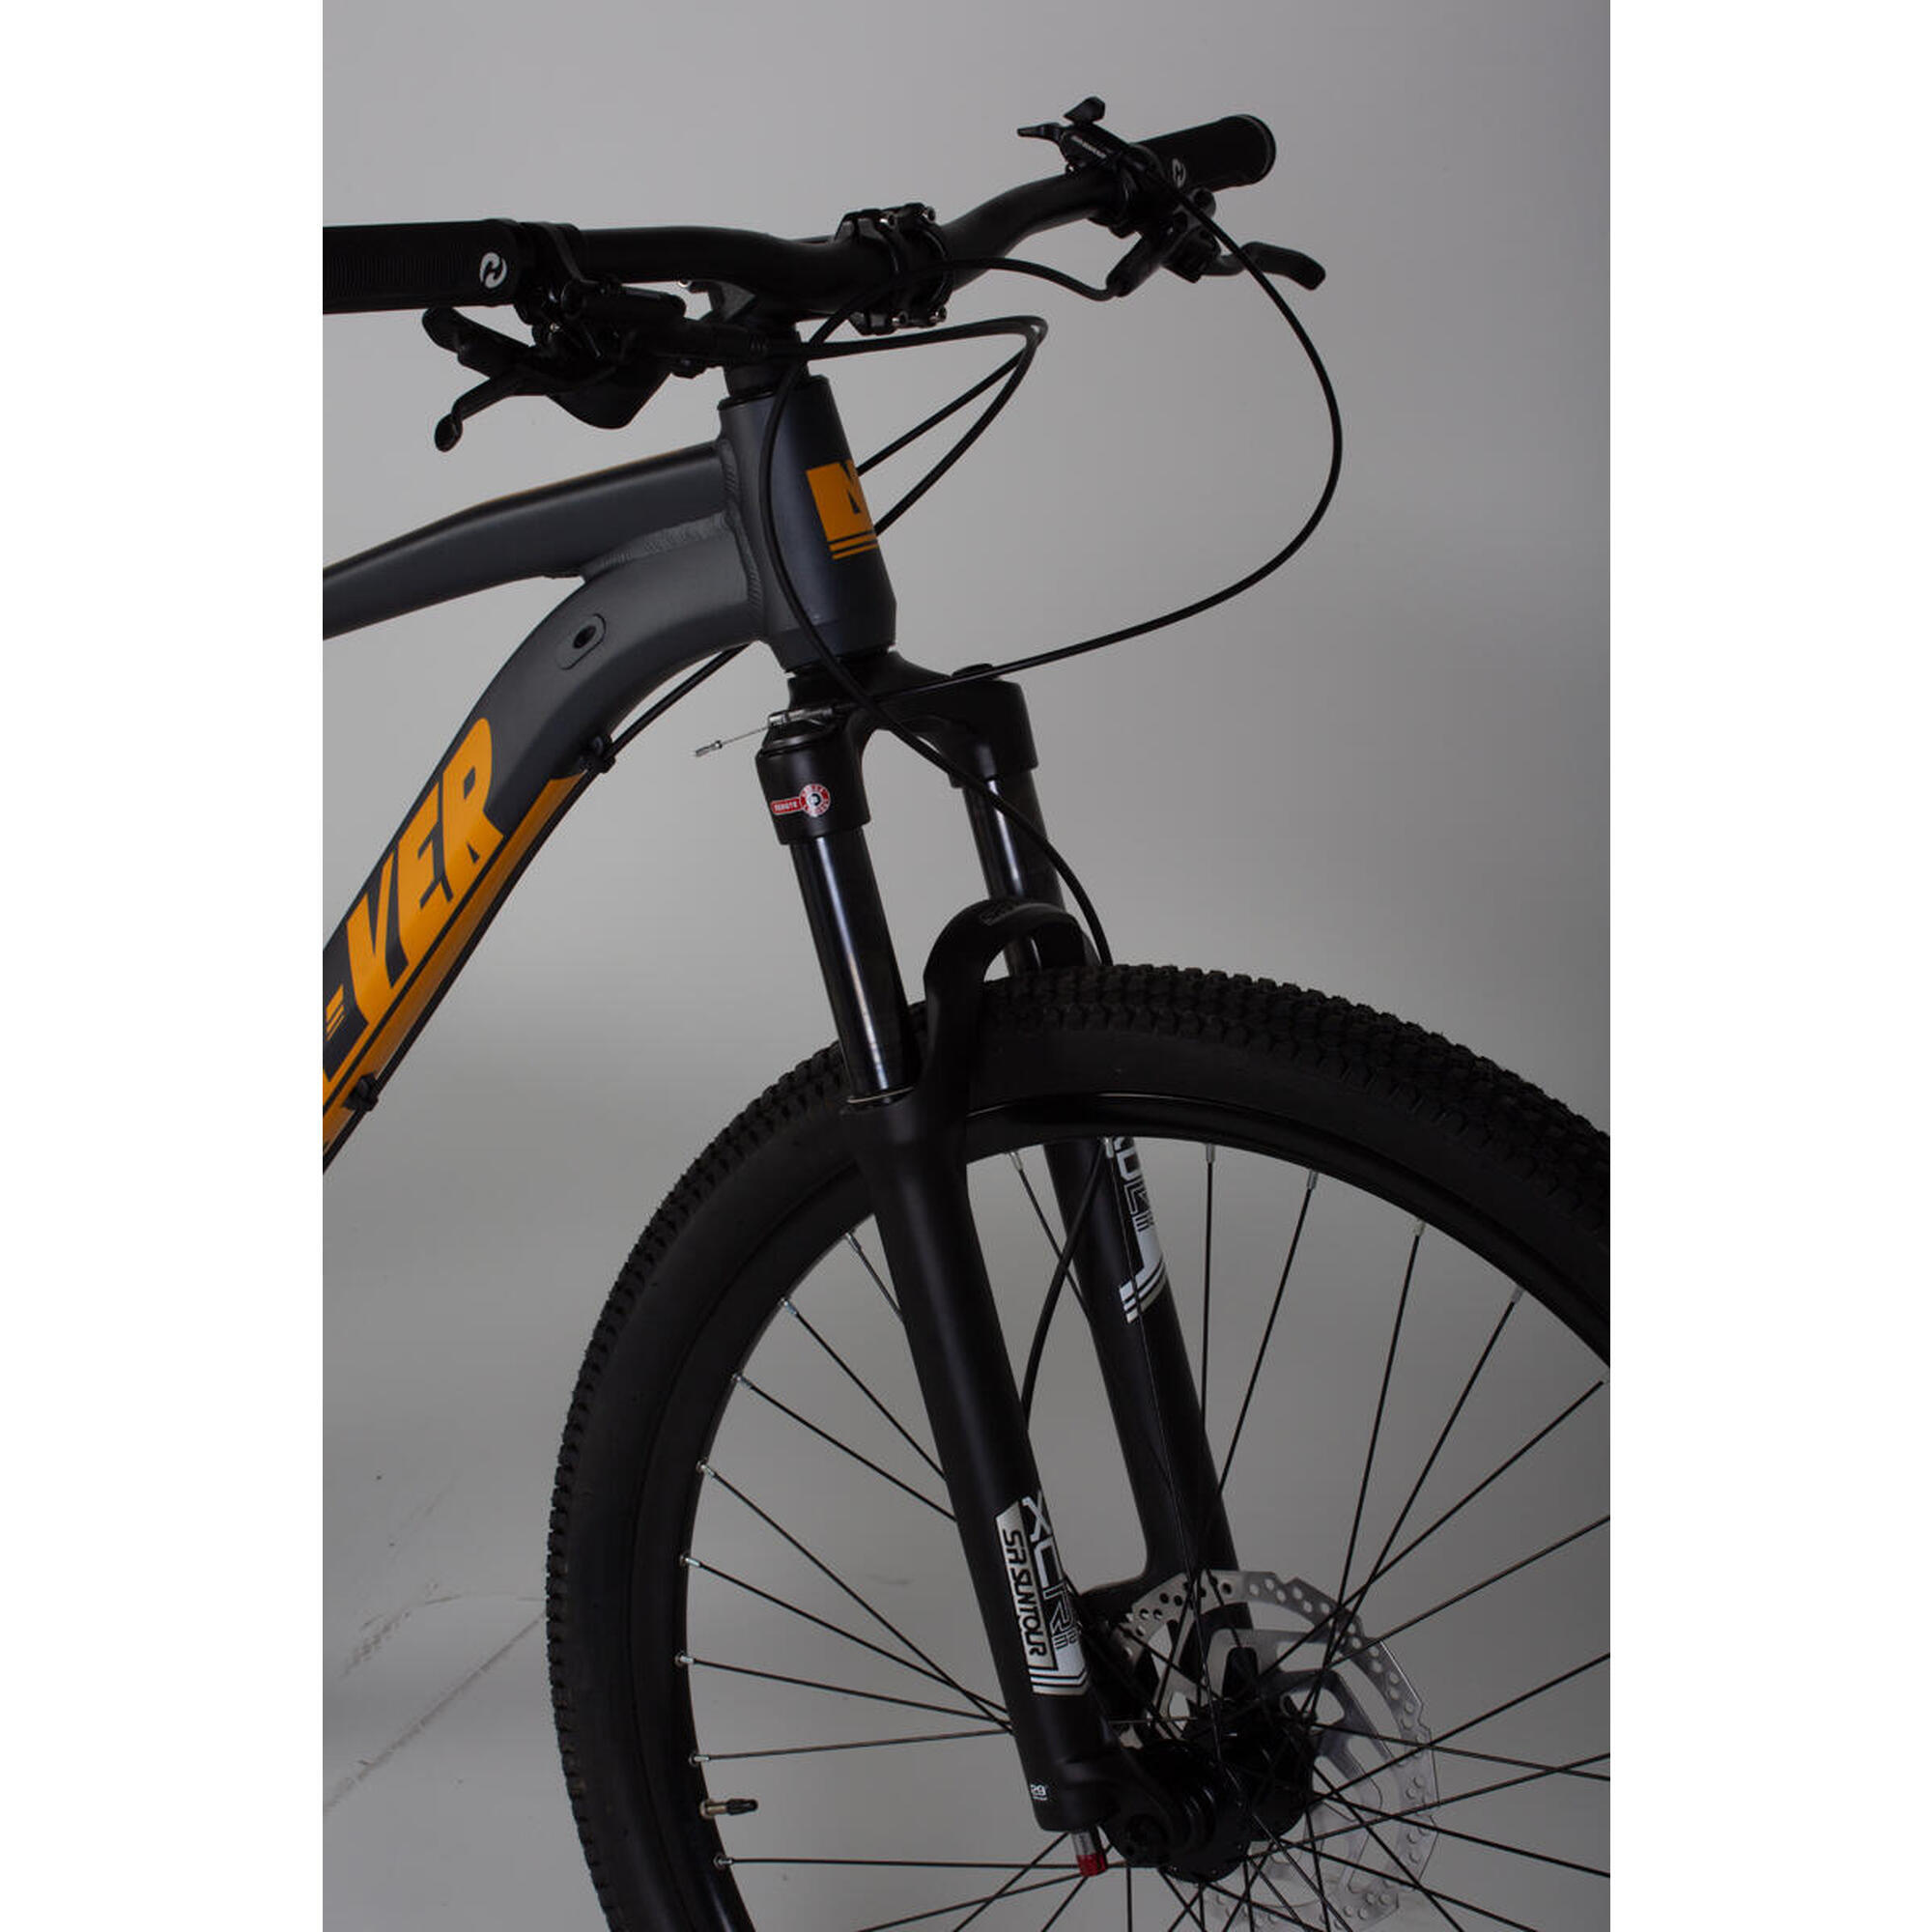 Bicicleta Nv 911 con ruedas de 29″, 11 velocidades, freno de disco hidráulico